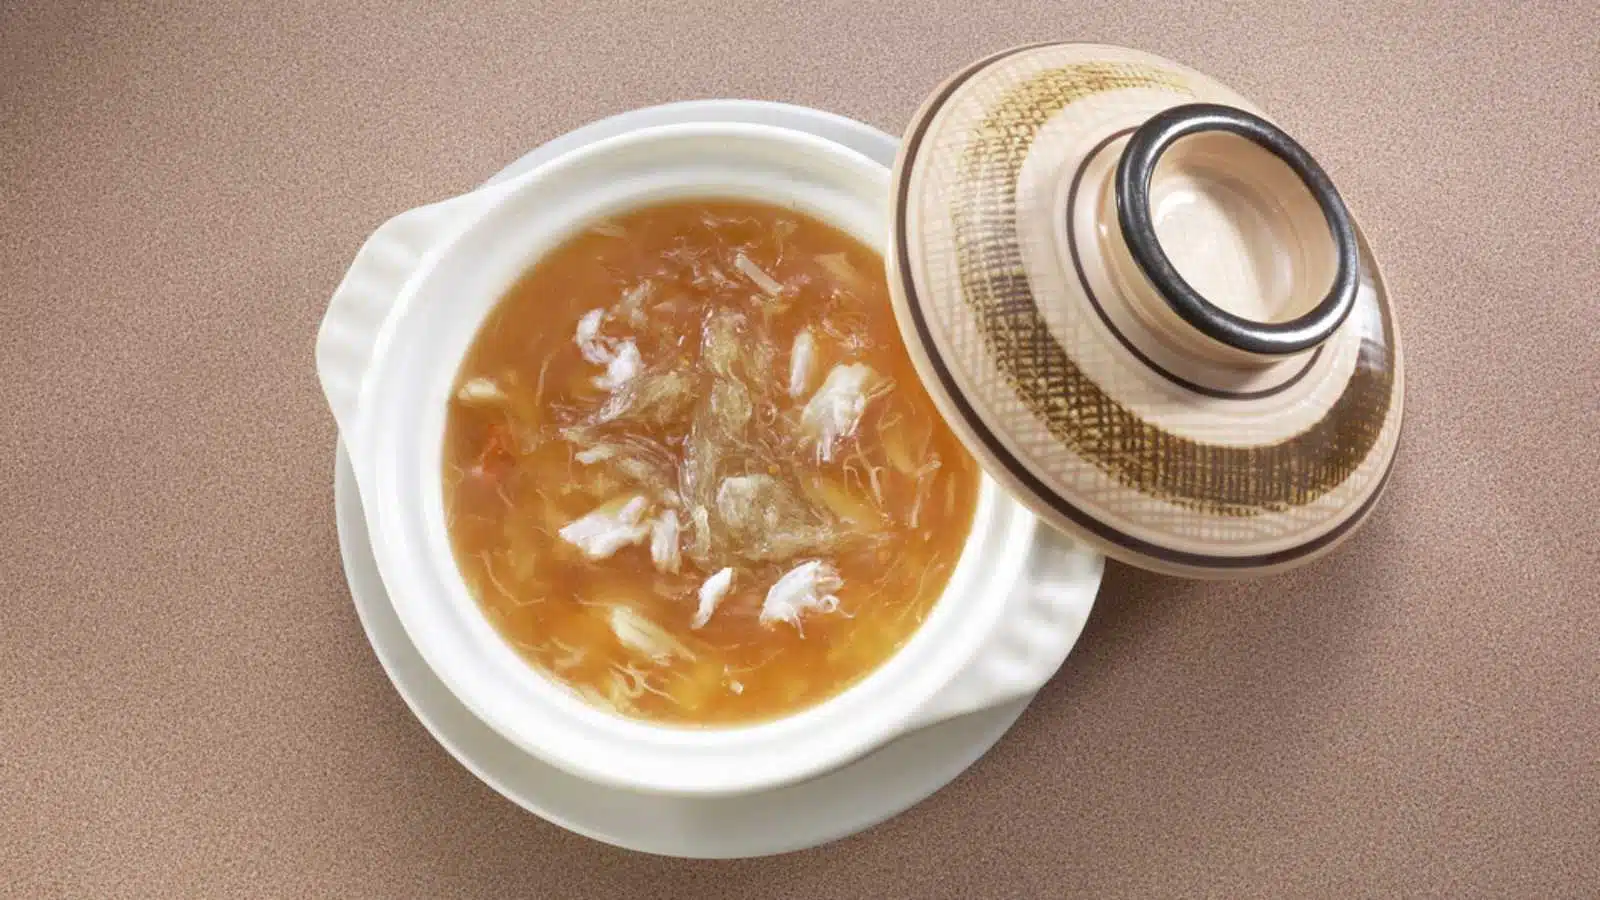 Asian cuisine shark fin soup